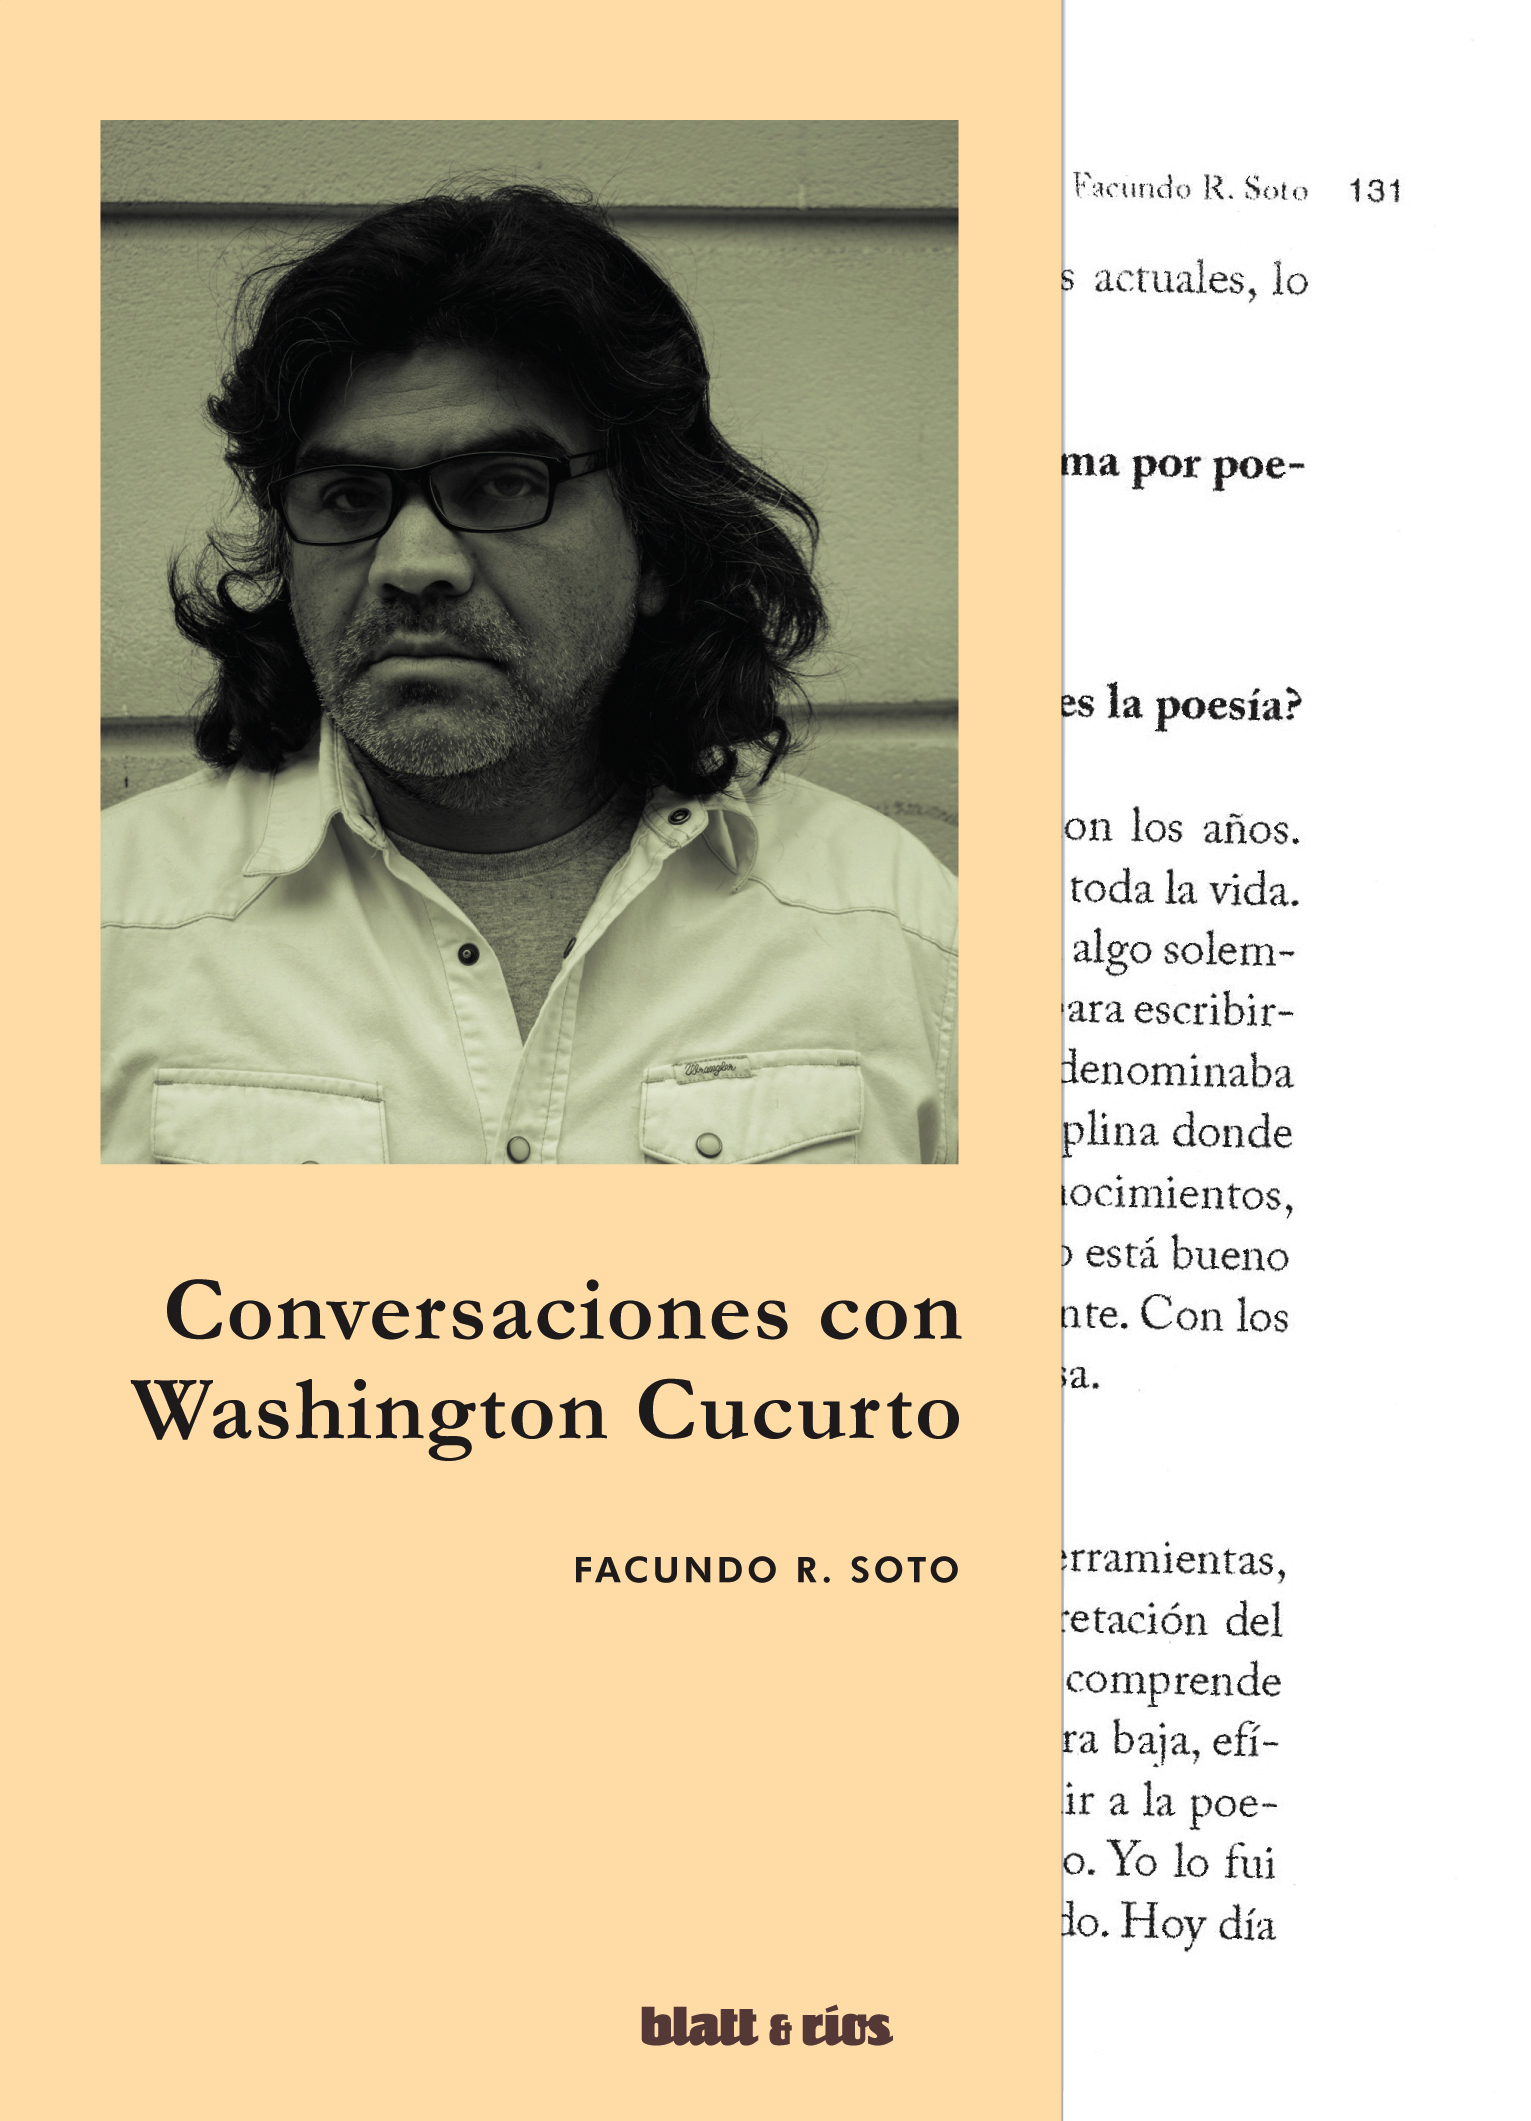 La trama de la felicidad/ Conversaciones con Washington Cucurto, por Facundo R. Soto